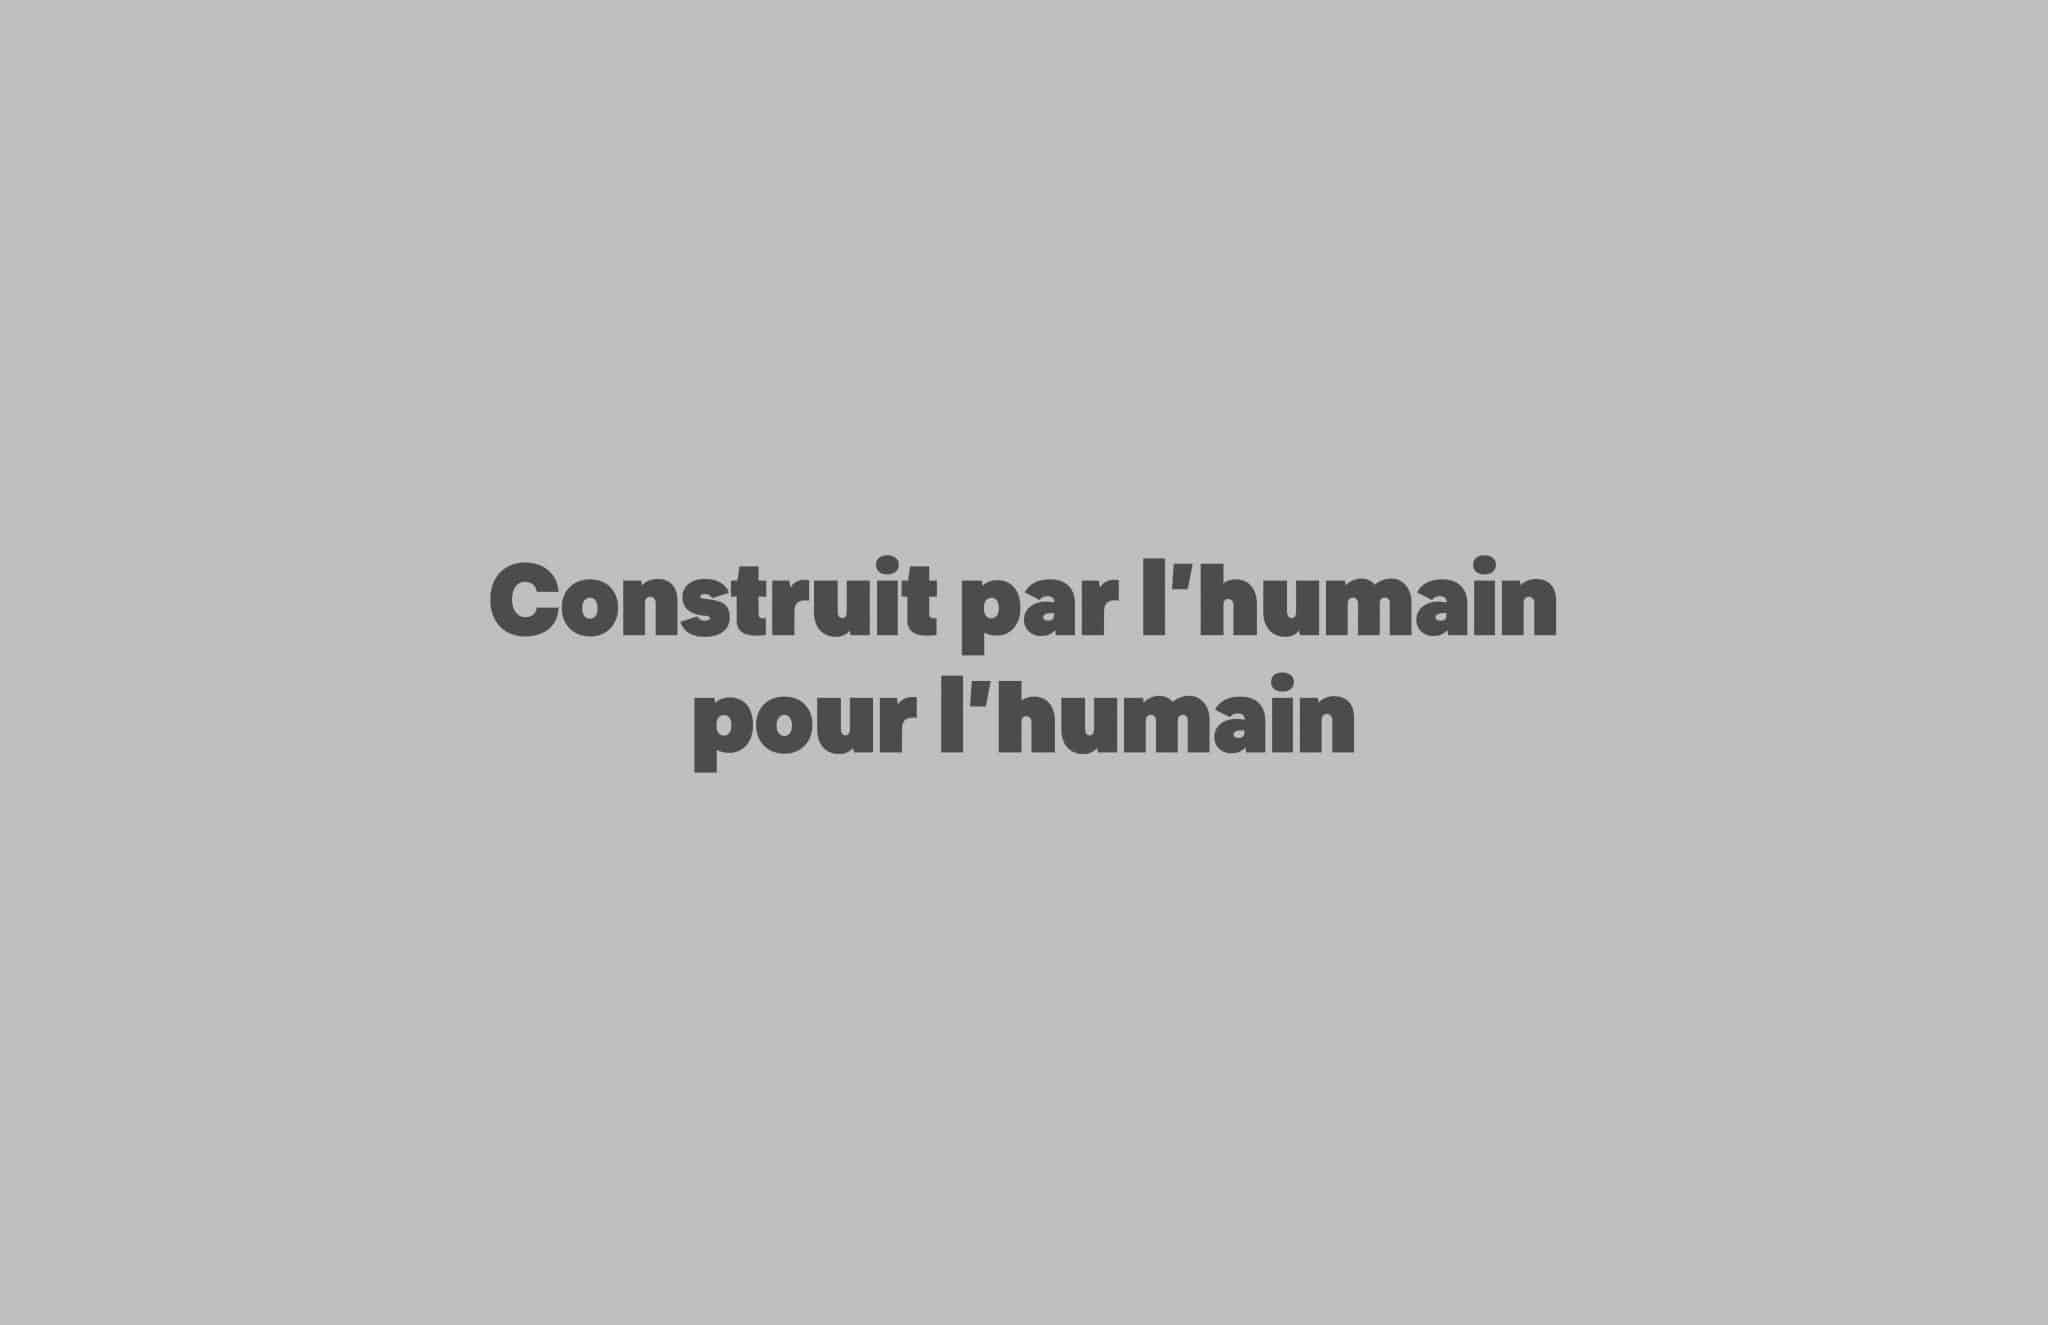   Construit par l’humain pour l’humain , Samuel Ouvrard, Polytechnique Montreal 